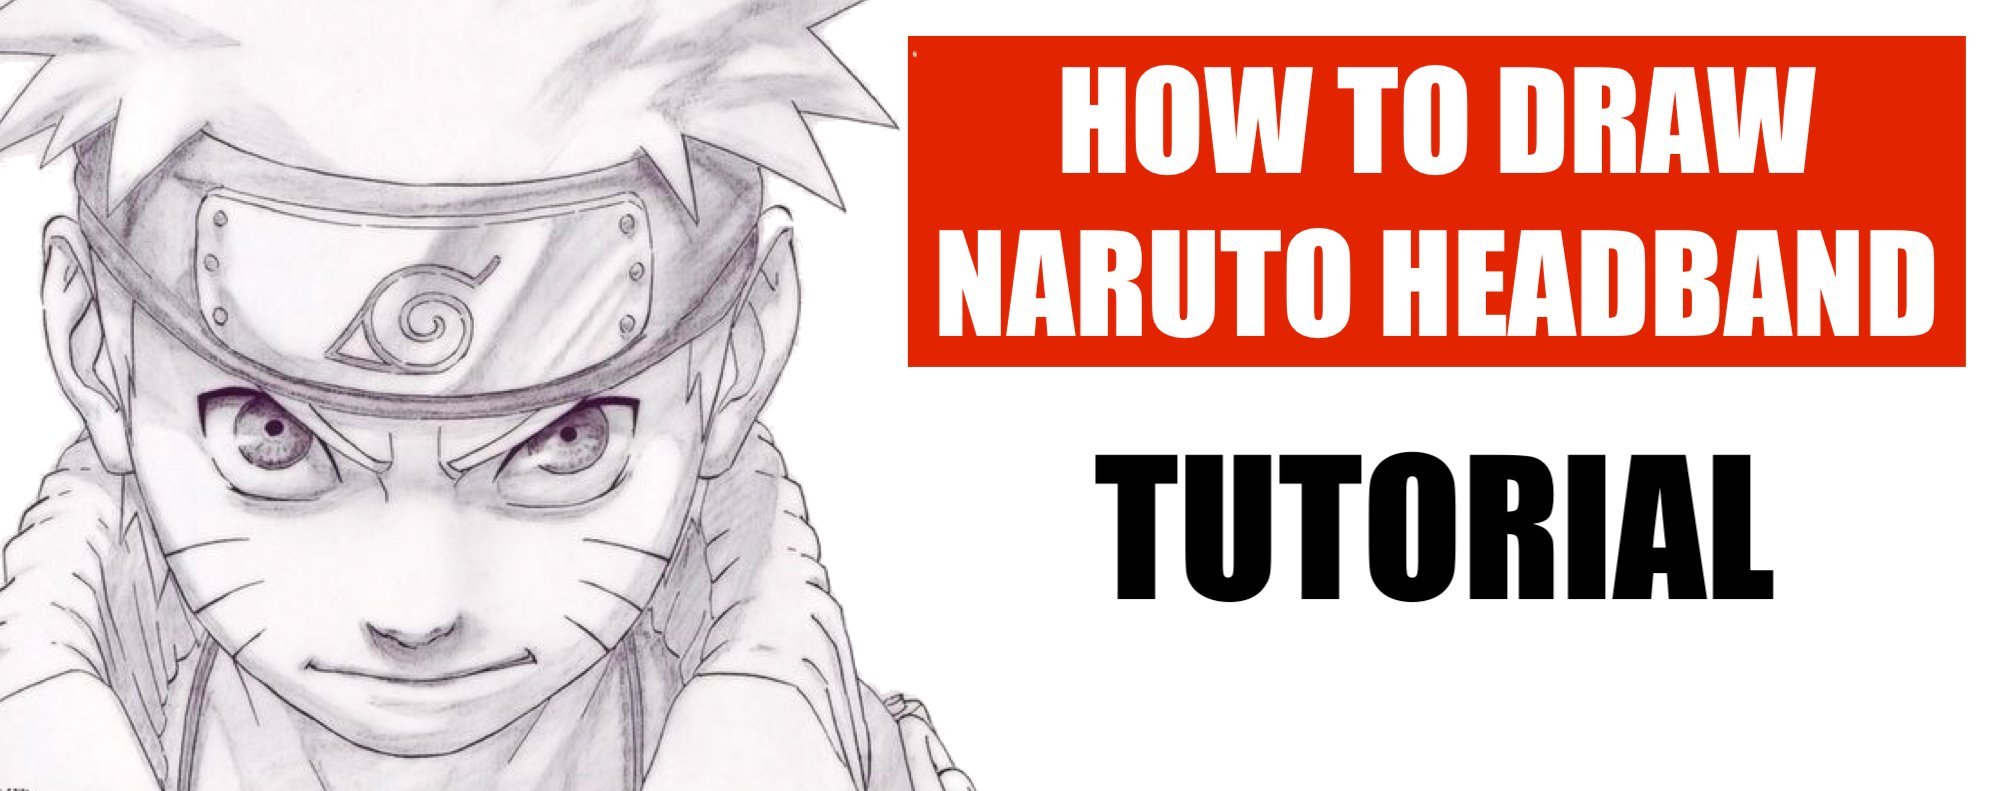 How to draw Naruto headband